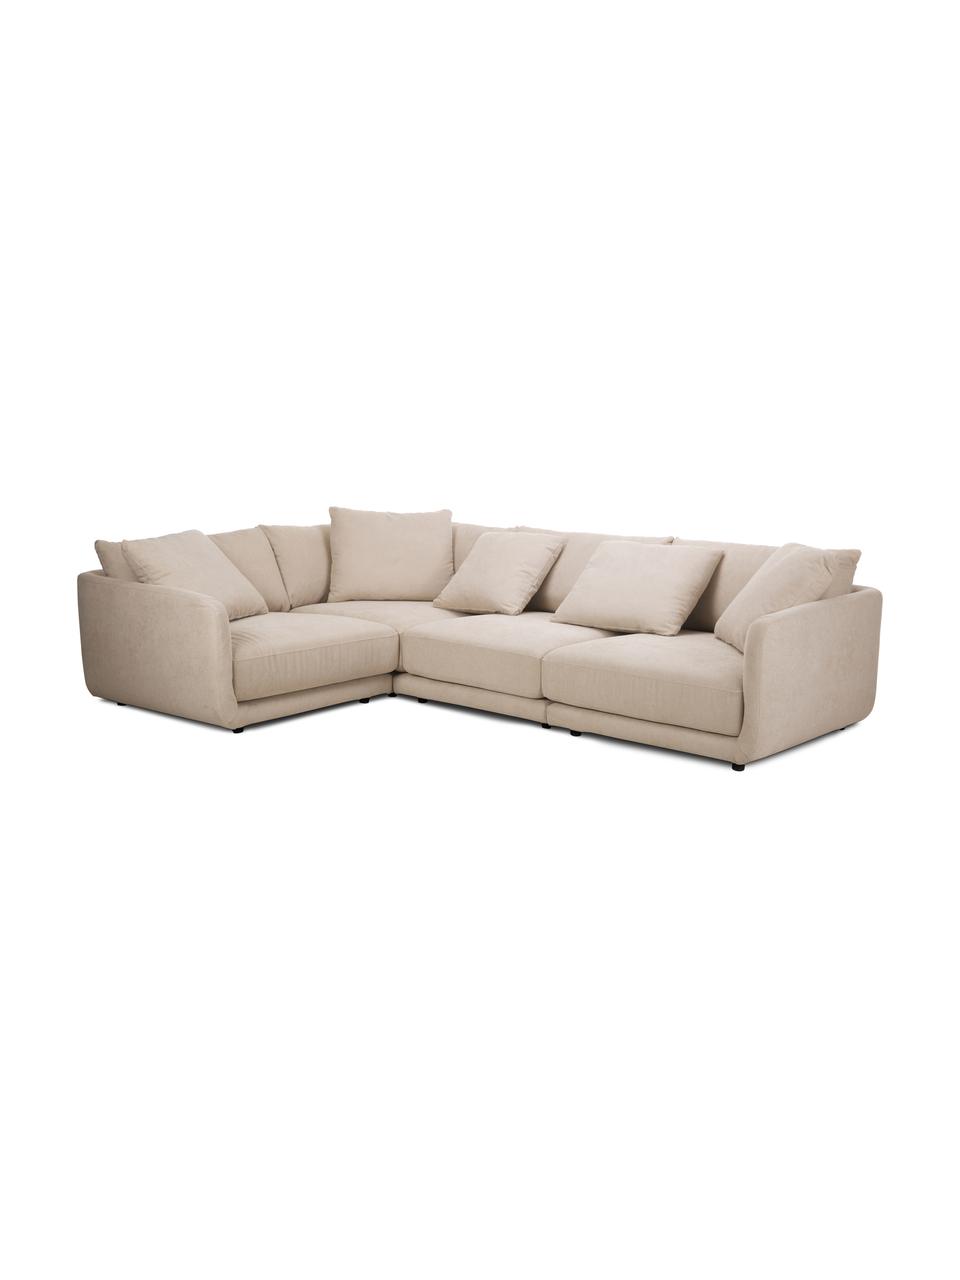 Narożna sofa modułowa Jasmin, Tapicerka: 85% poliester, 15% nylon , Nogi: tworzywo sztuczne, Beżowa tkanina, S 306 x W 84 cm